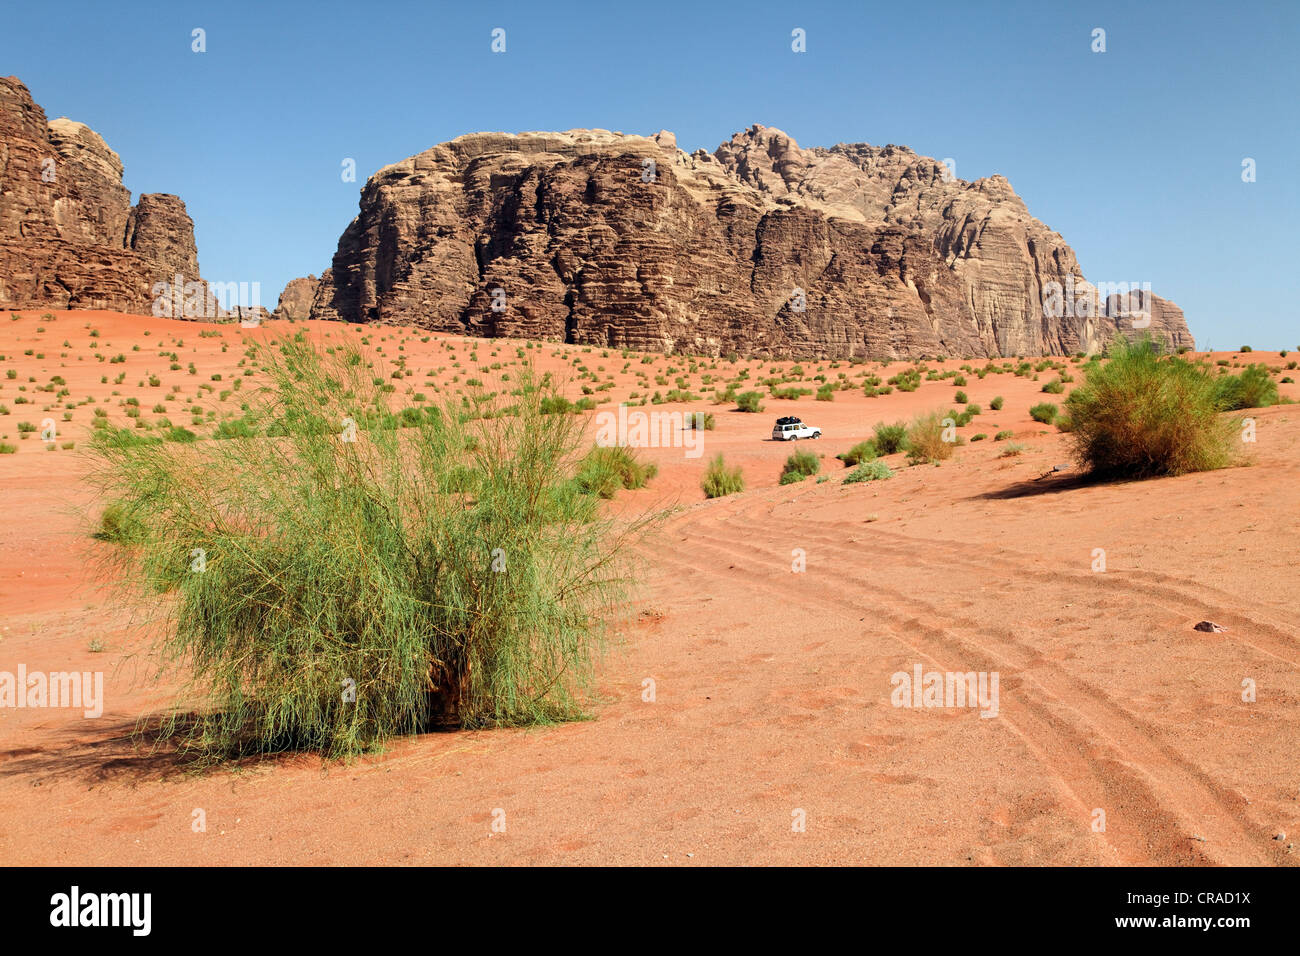 Montagnes, vastes plaines, désert d'arbustes et d'un véhicule hors route, Wadi Rum, Royaume hachémite de Jordanie, Moyen-Orient, Asie Banque D'Images